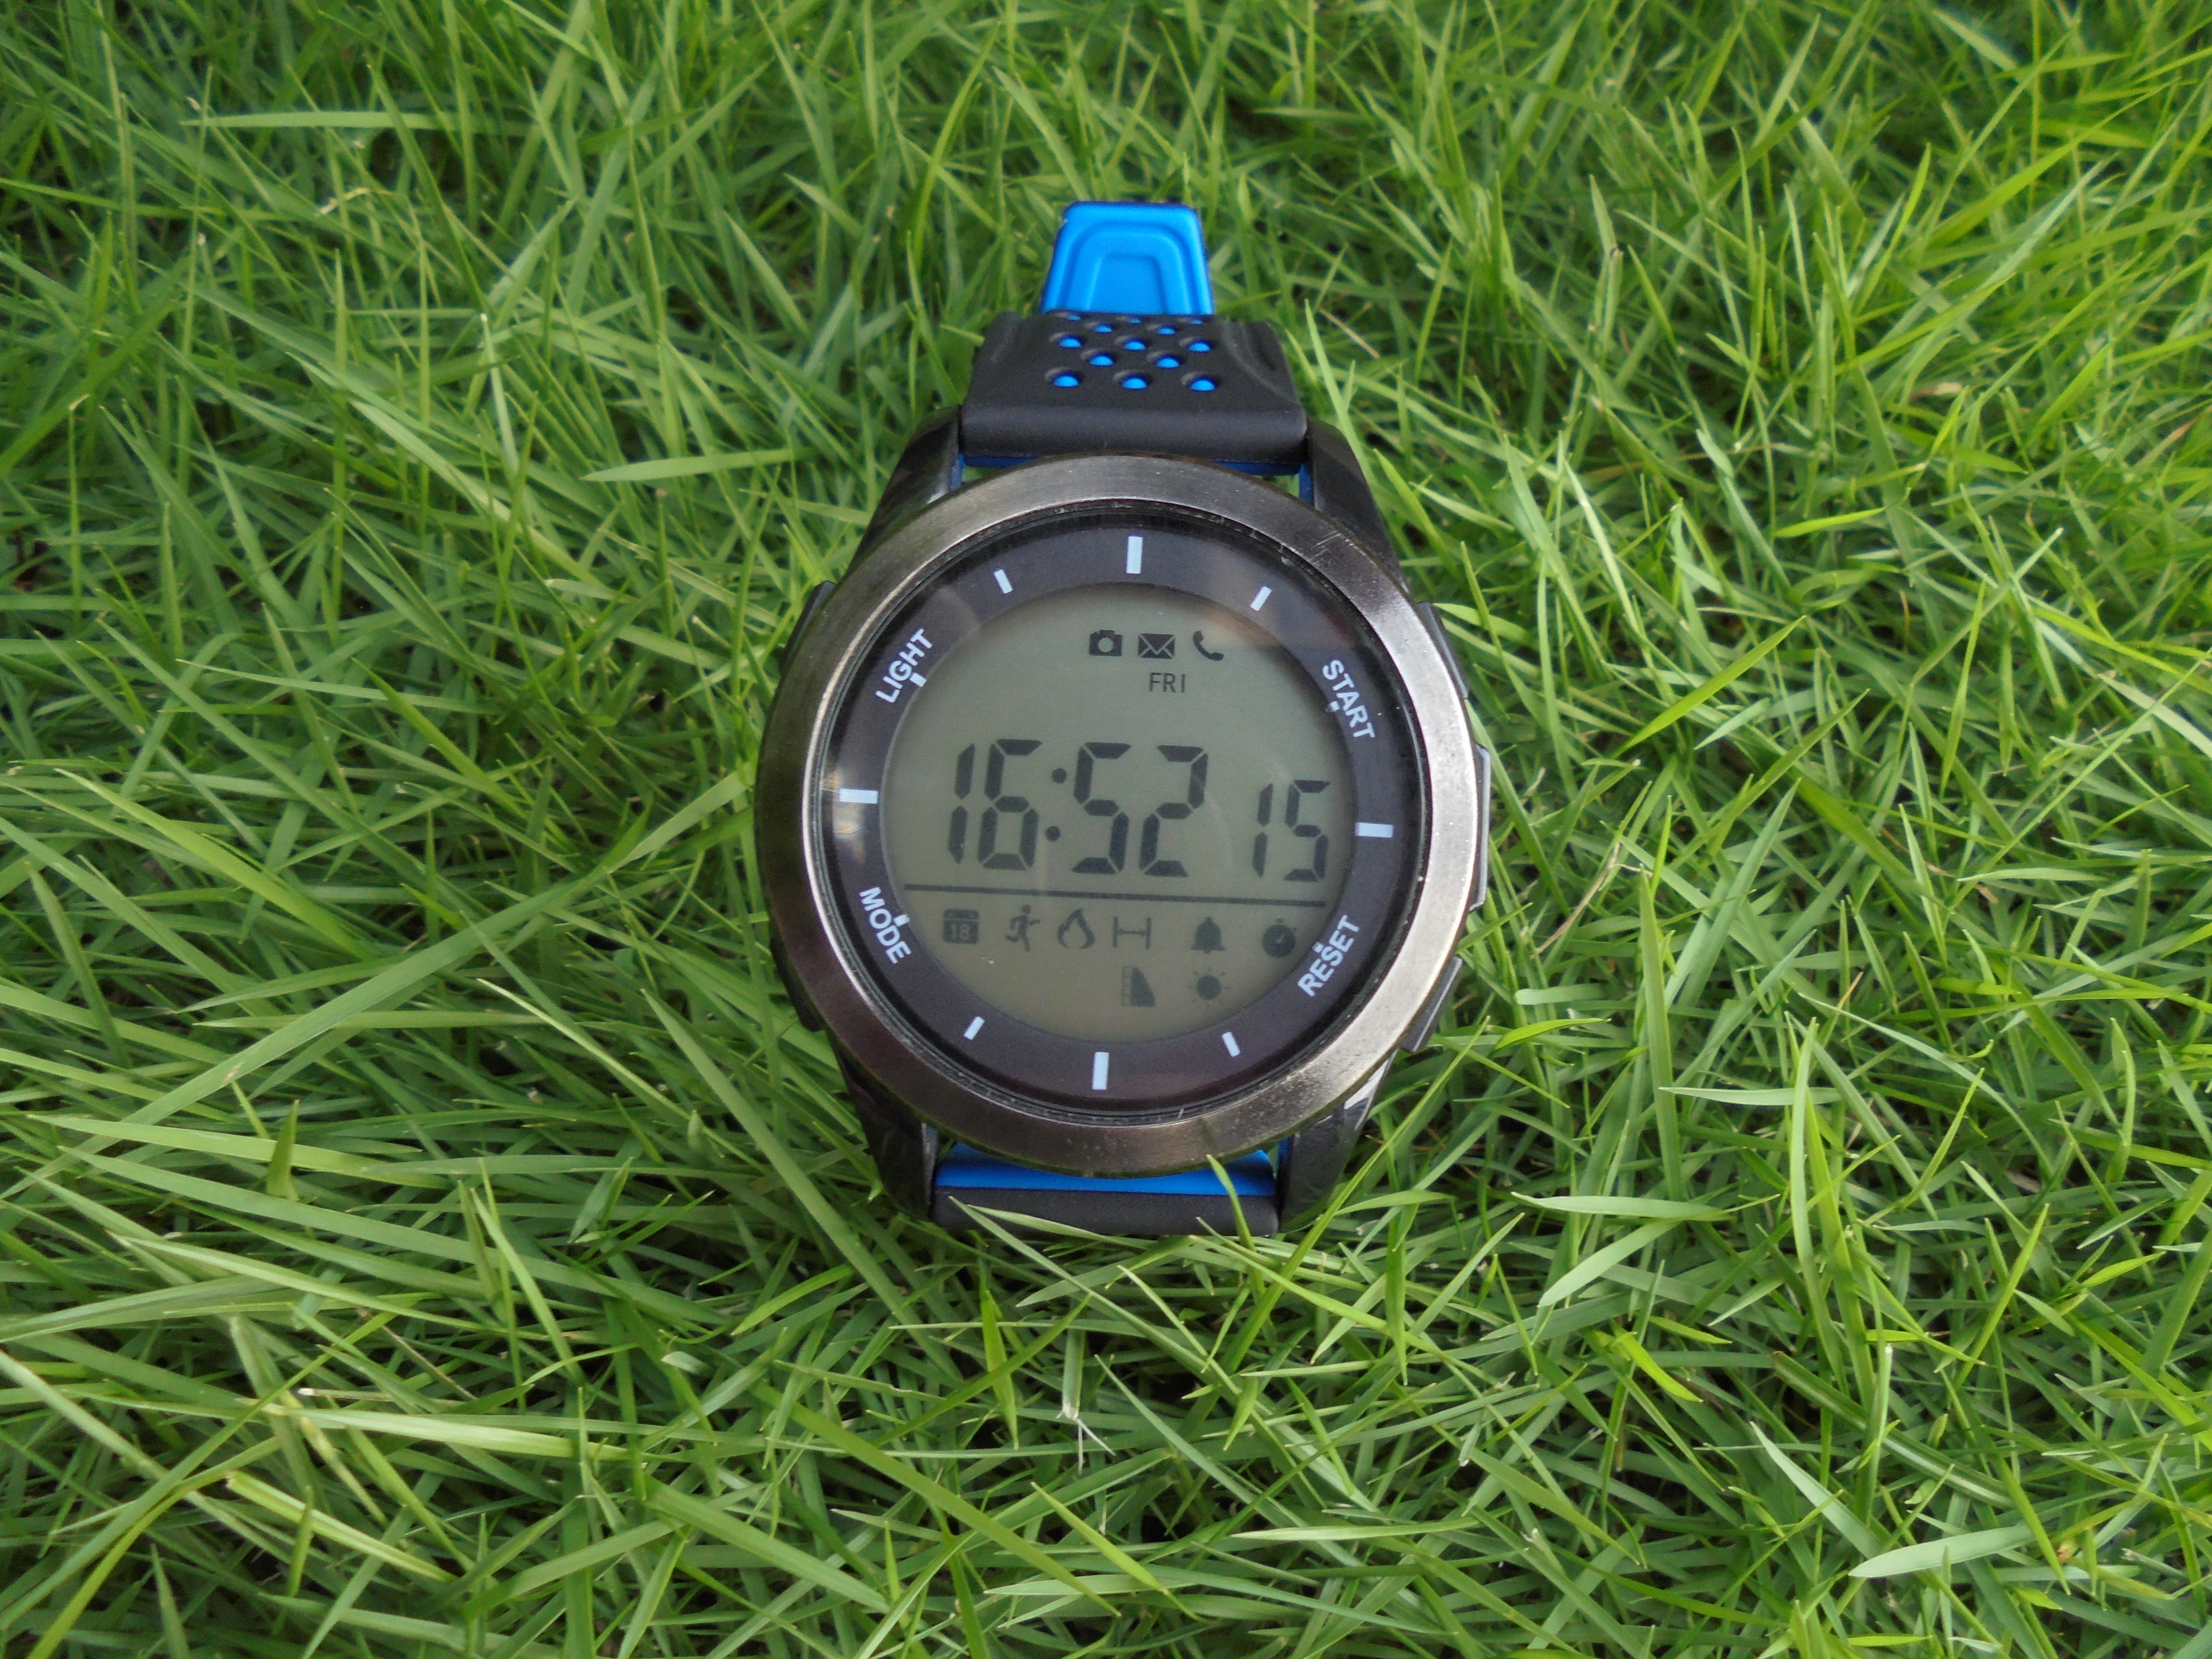 Đánh giá smartwatch DT No.1 F3: phong cách thể thao, chống nước, pin 1 năm